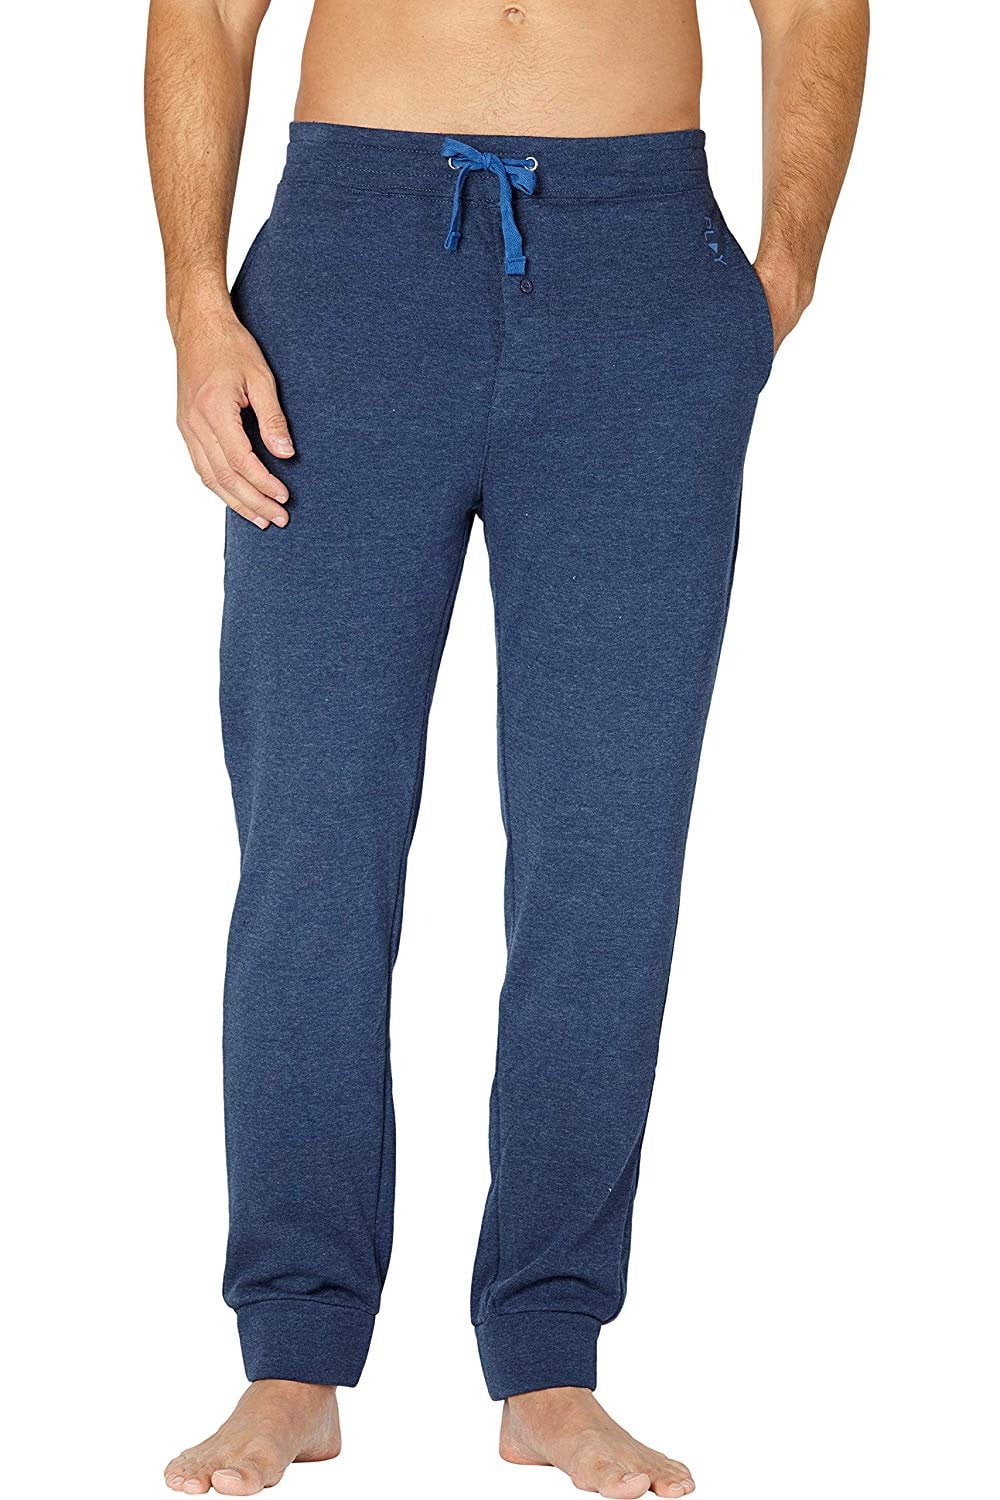 Intimo Mens Soft Fleece Pajama Sleep Pants Navy X-Large - Walmart.com